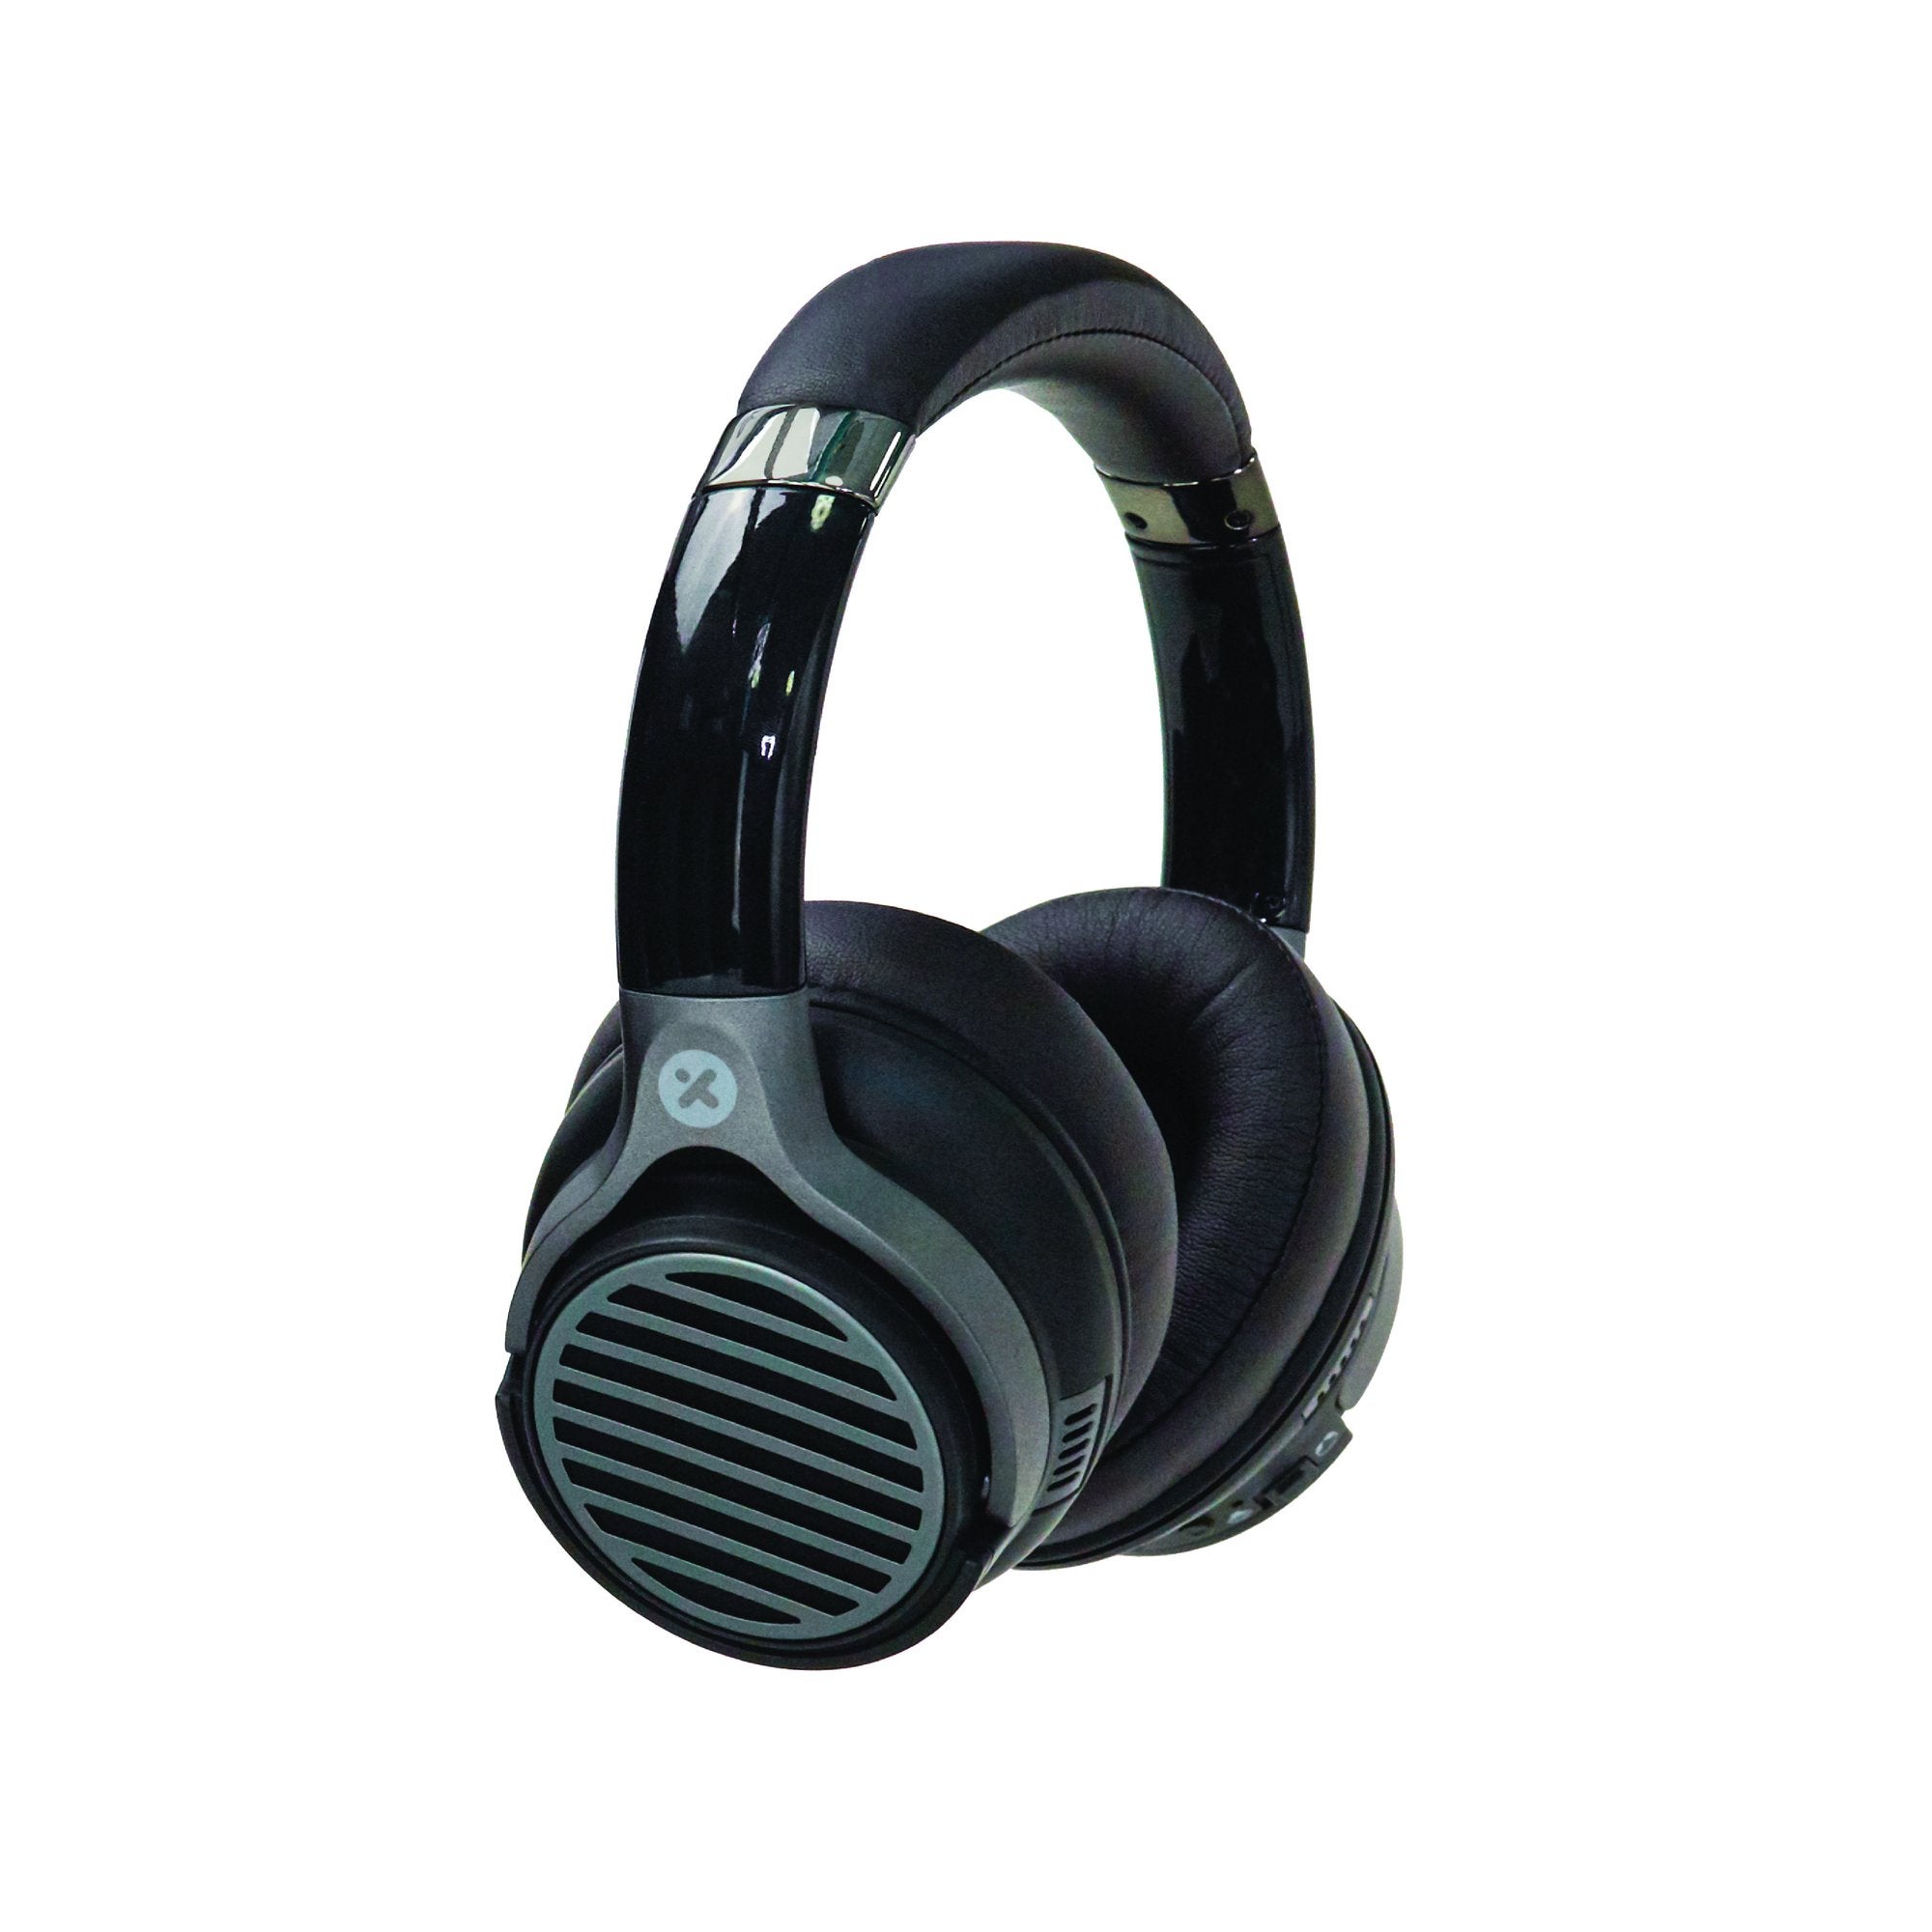 X-mini Evolve 2 Headphones